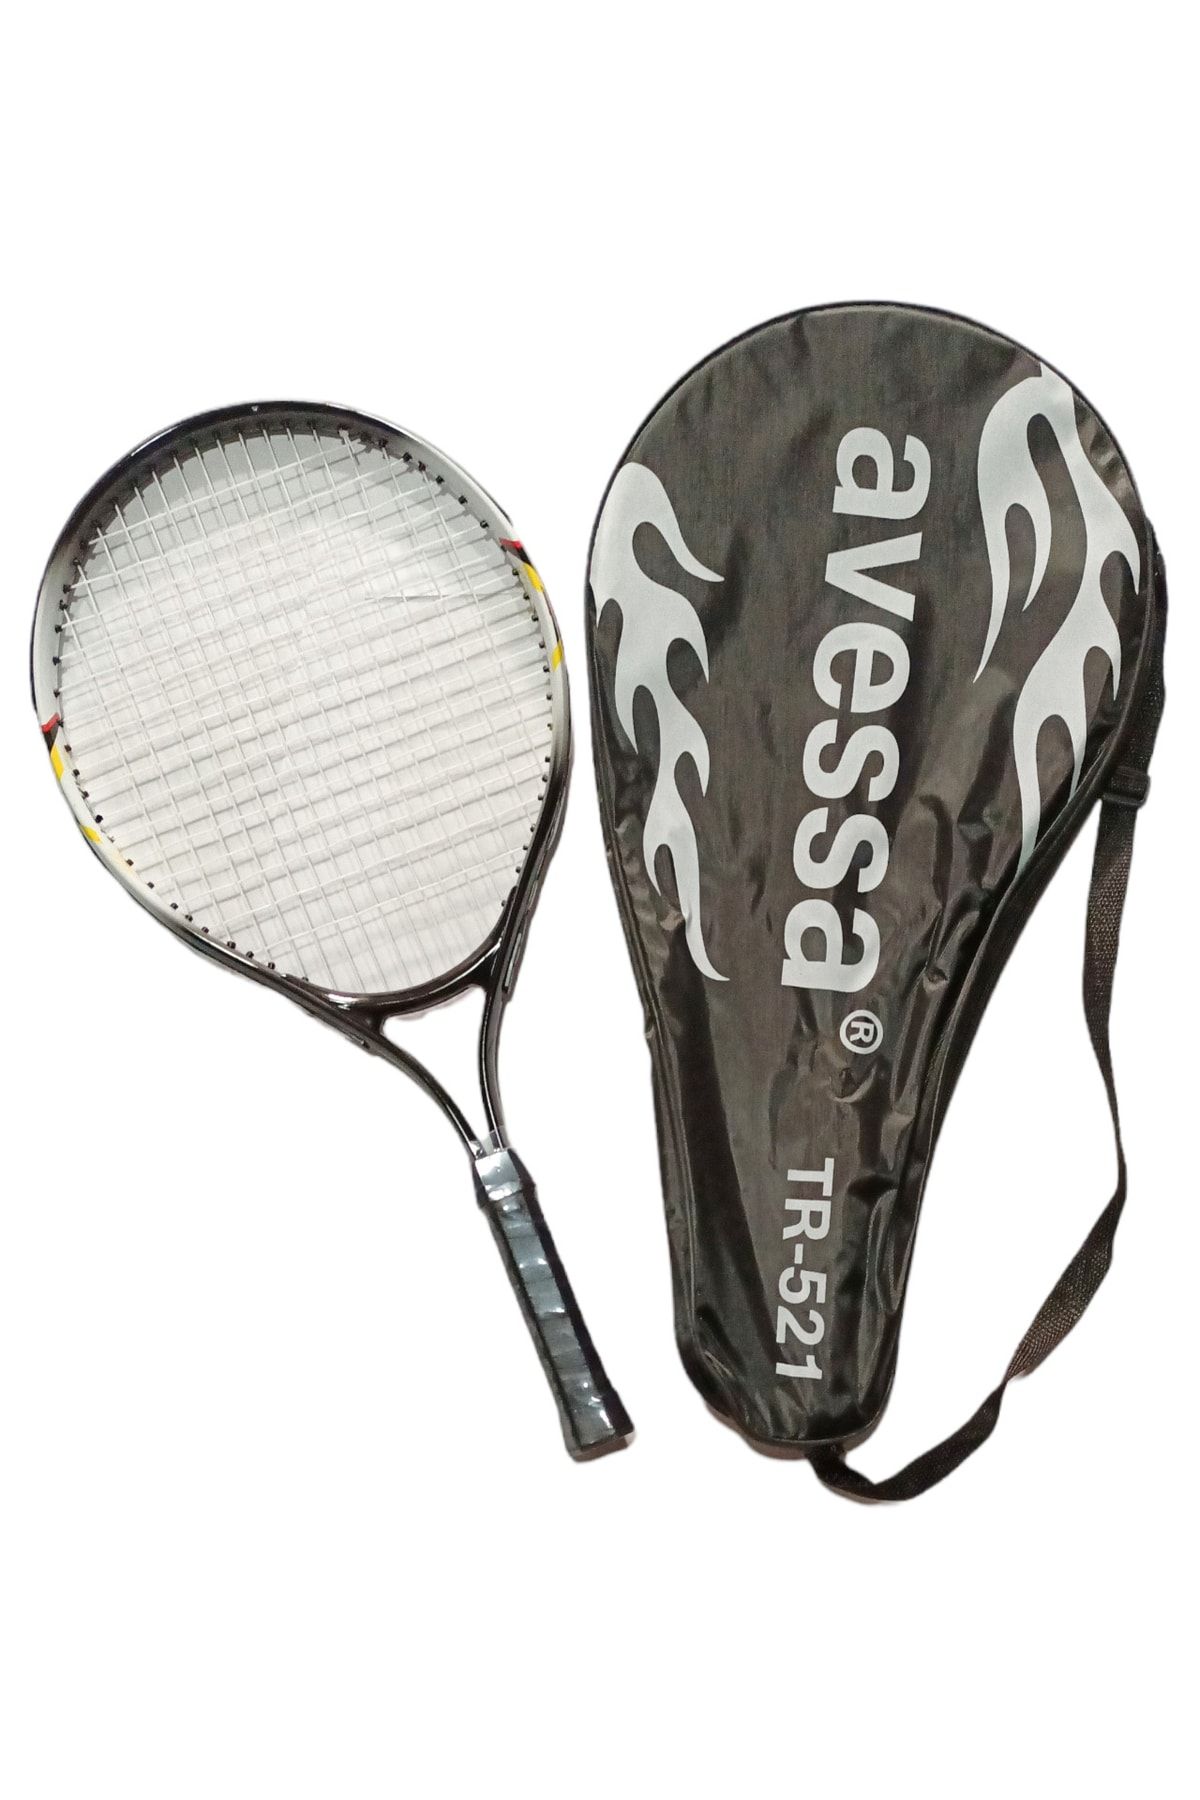 Avessa Tr-521 Tenis Raketi 21